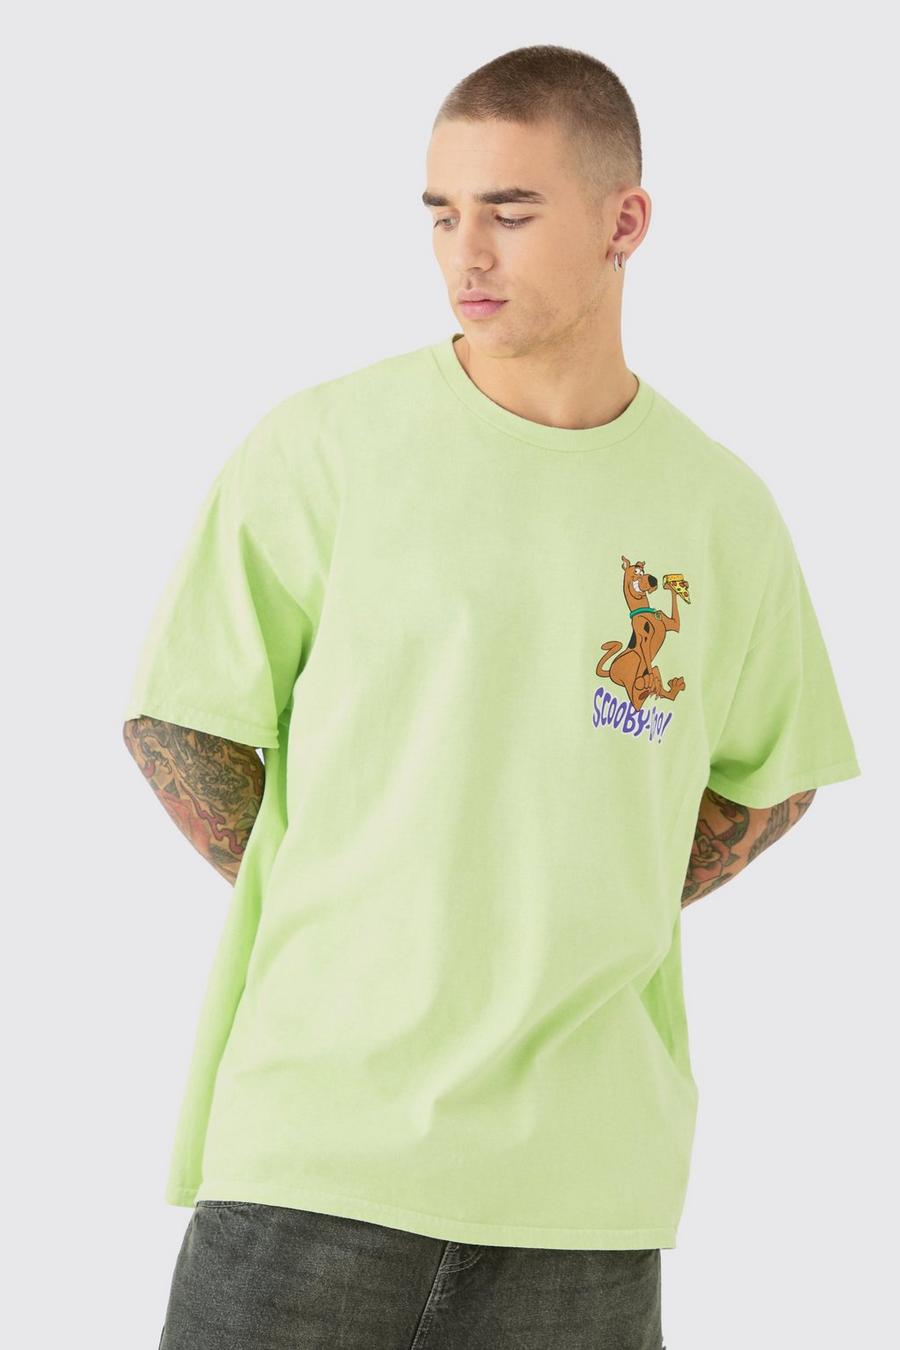 T-shirt oversize ufficiale in lavaggio di Scooby Doo, Green